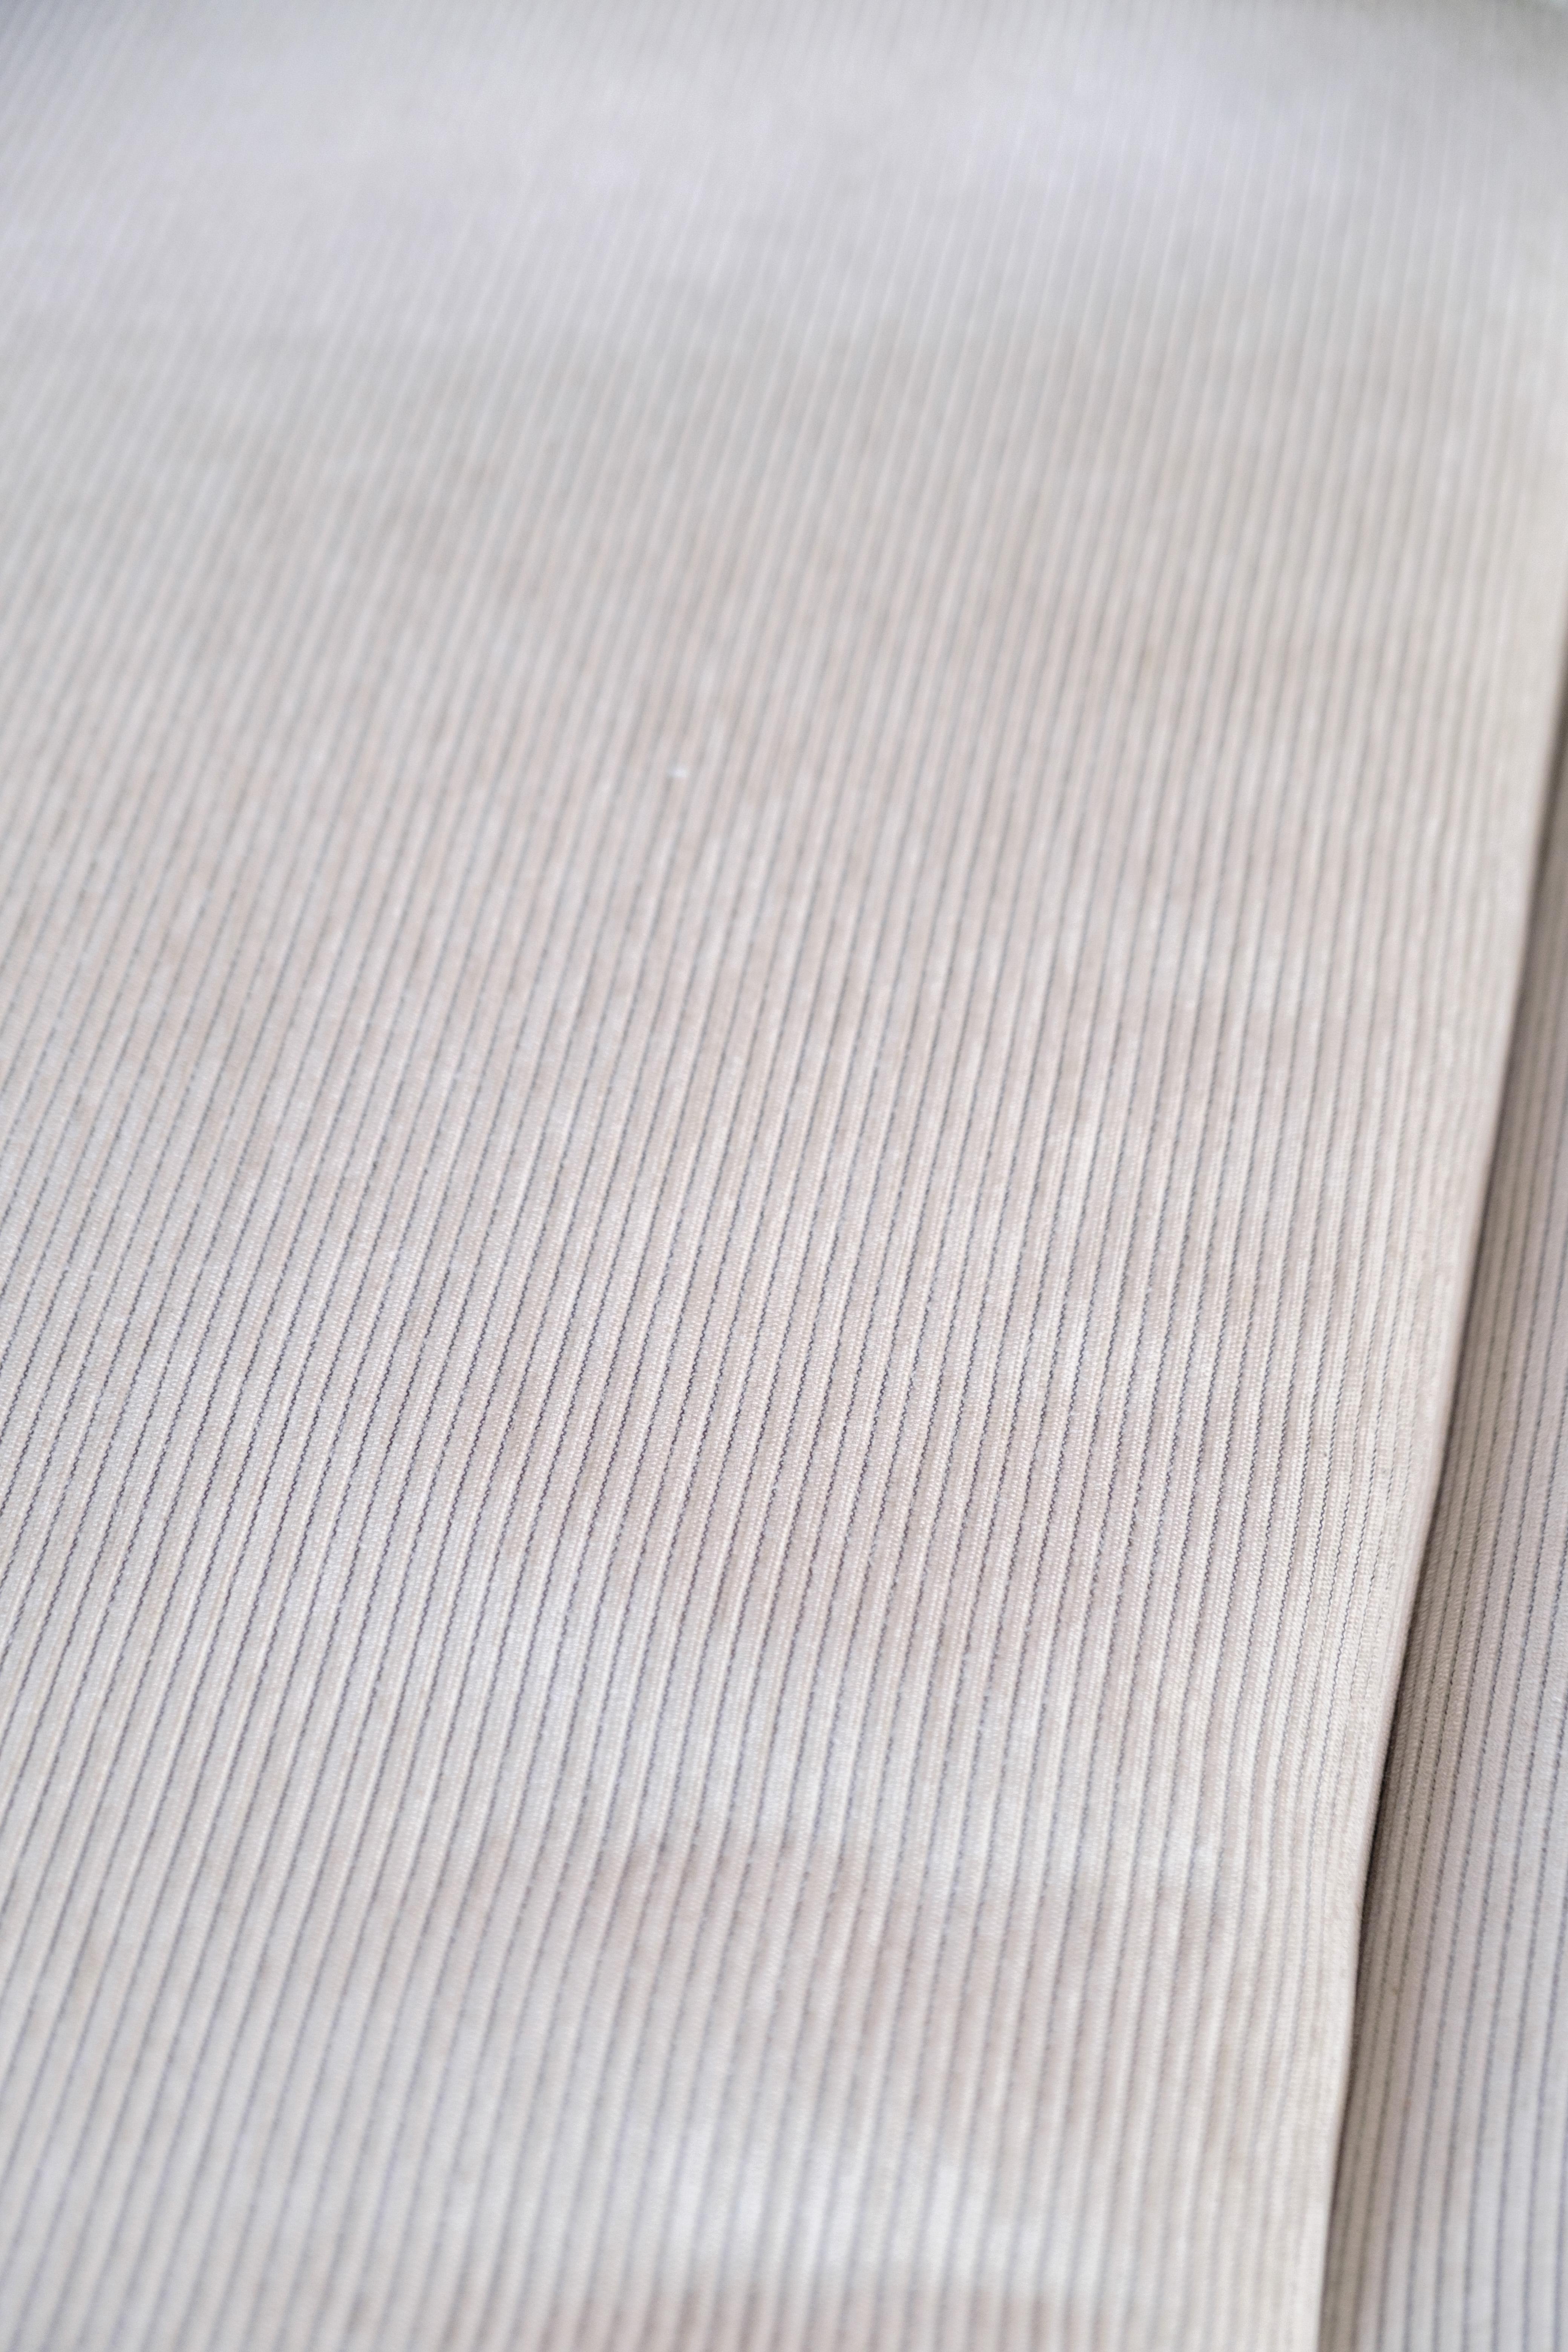 Canapé Baseline Chaiselong, conçu par Jens Juul Eilersen dans un coloris blanc crème. Baseline rayonne de qualité et de confort et le design simple signifie que le canapé est intemporel et s'adapte à tous les intérieurs. Le canapé apparaît avec le